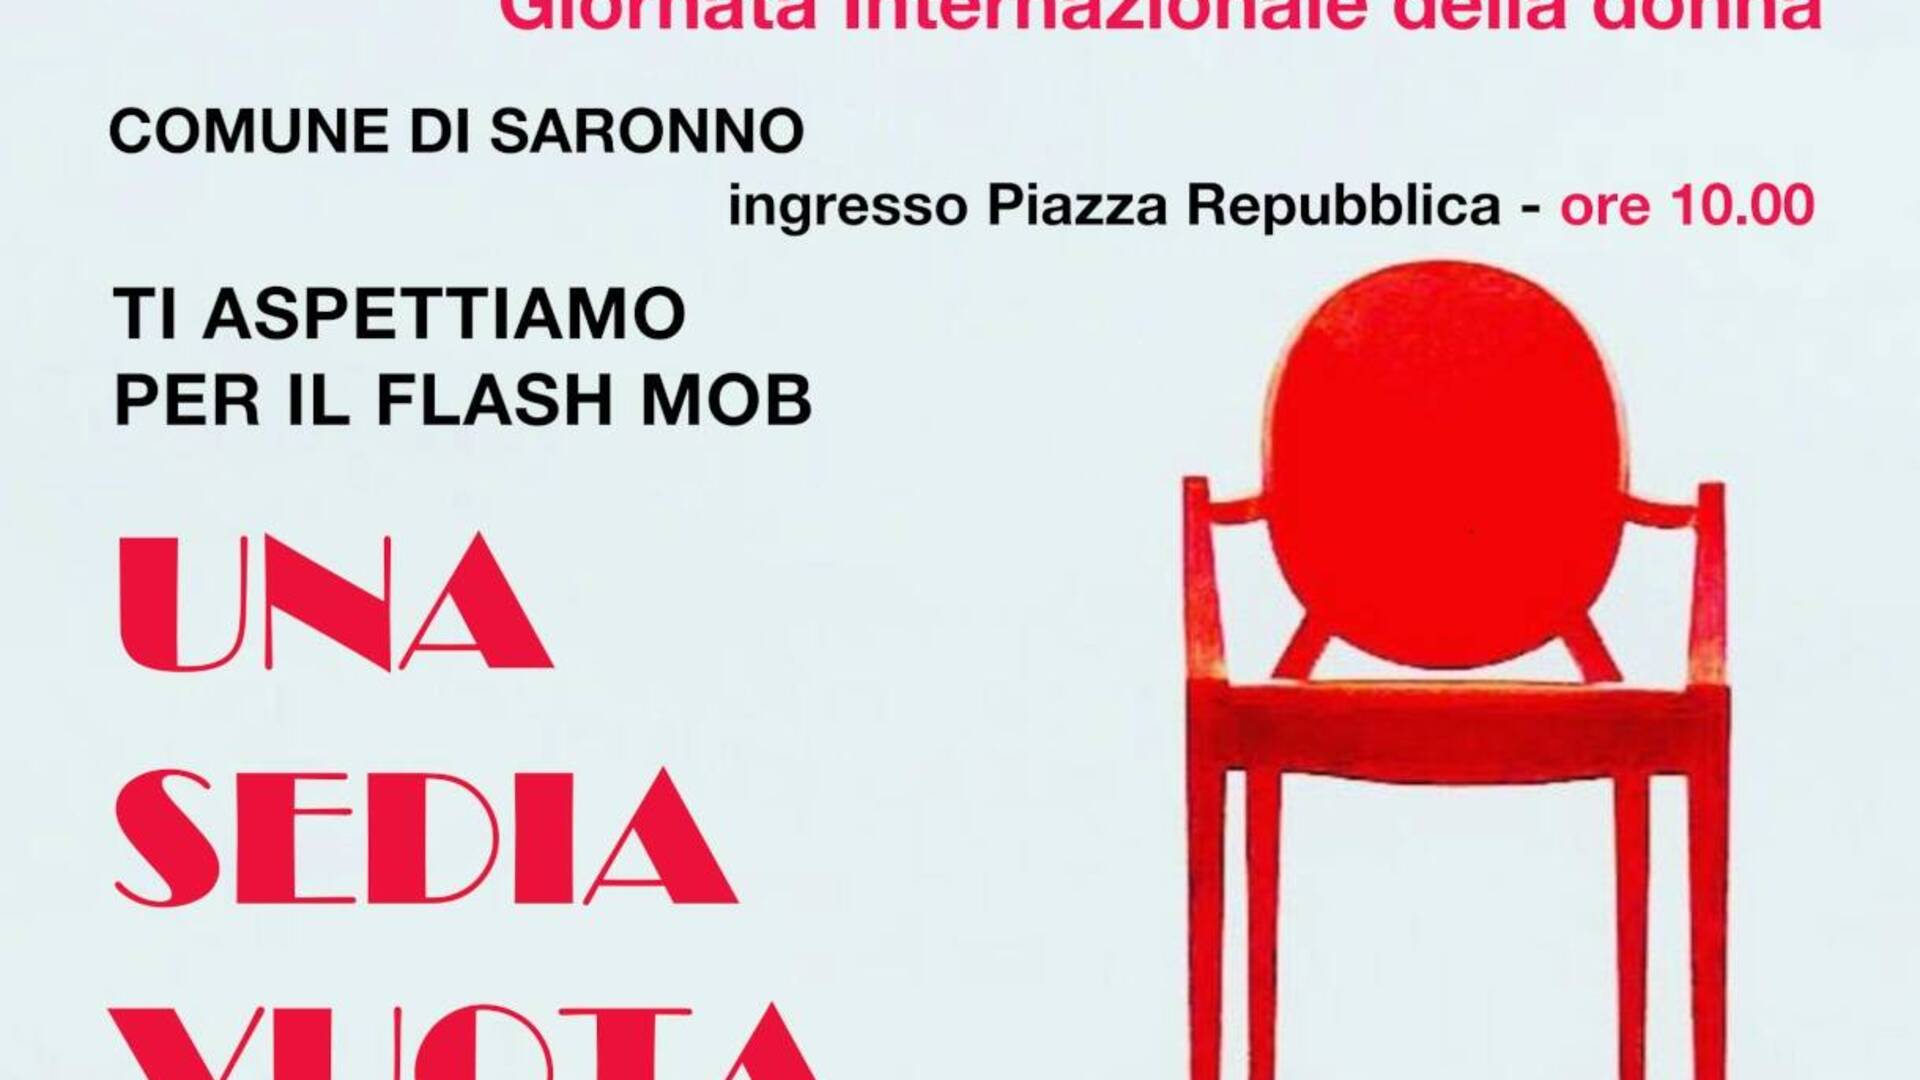 8 marzo Saronno, flash mob “Una sedia vuota” in Municipio